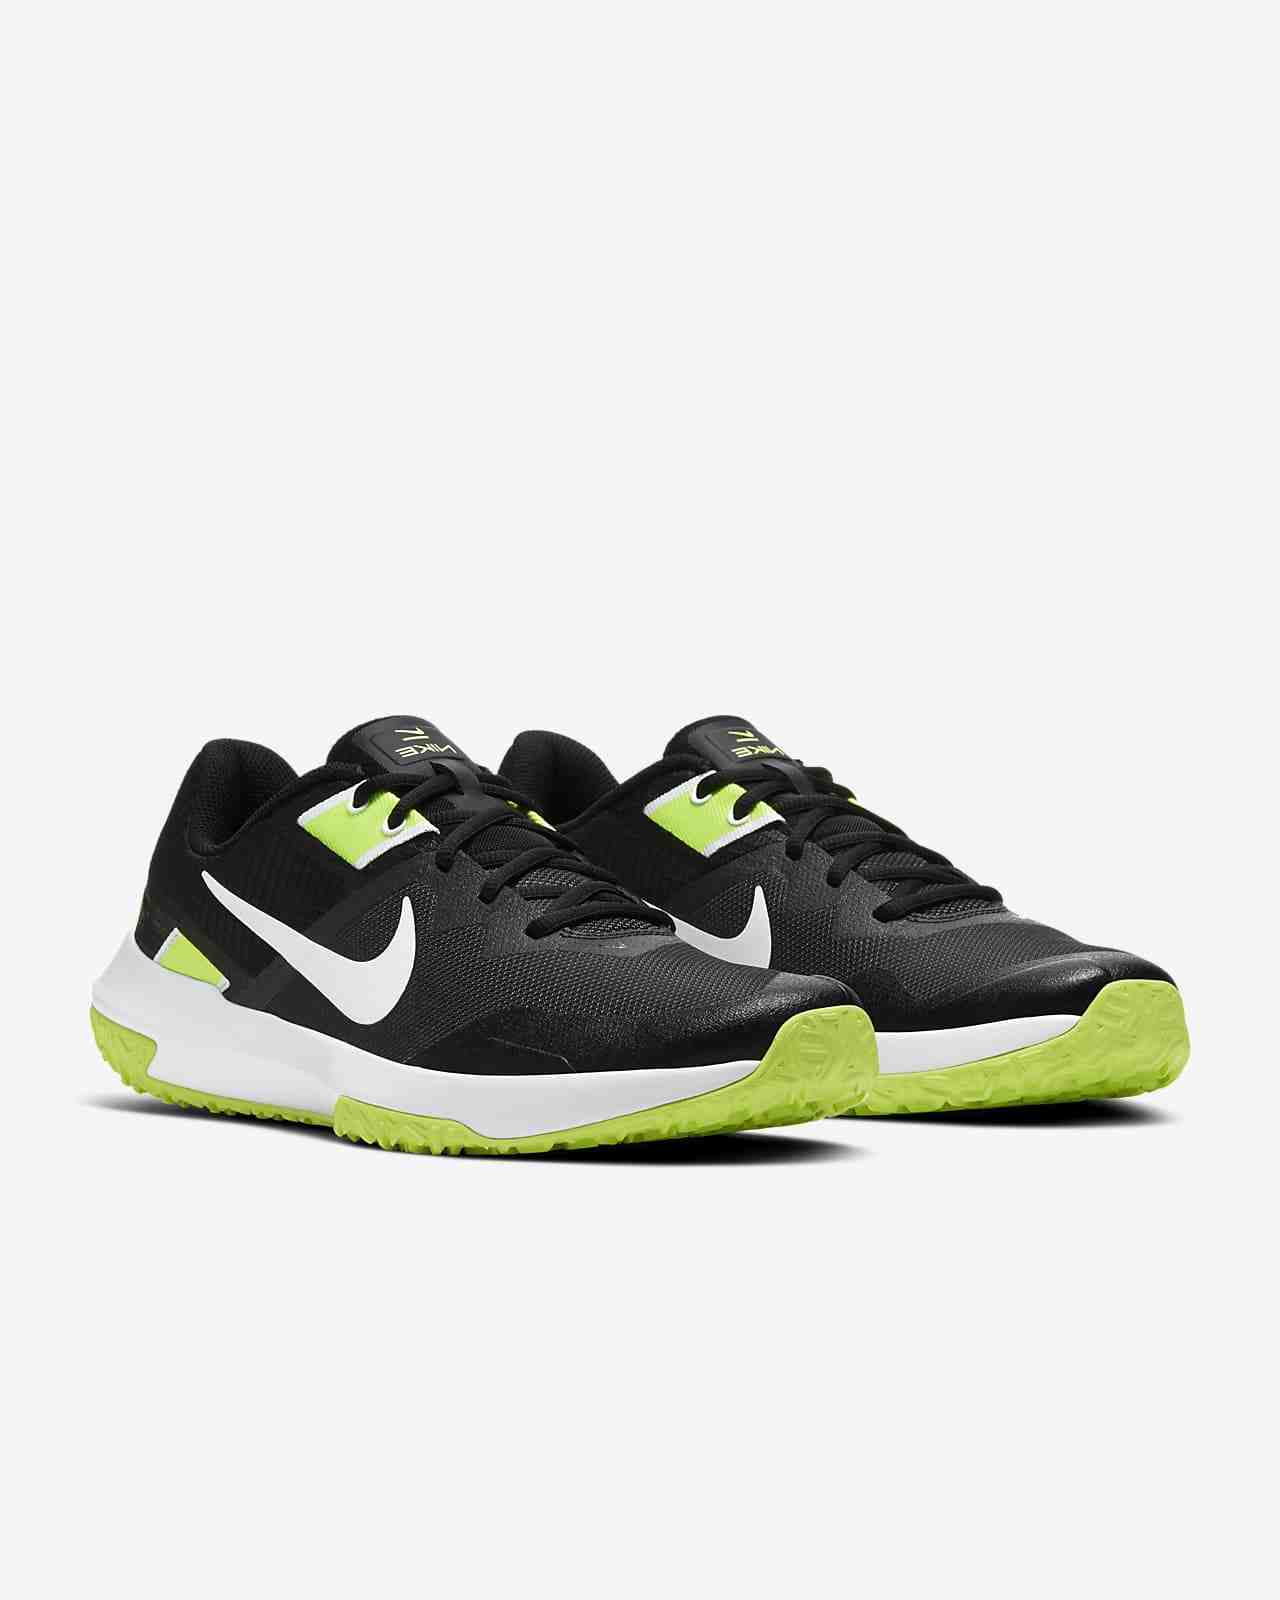 Meilleures offres de chaussures et de chaussures Nike pour le vendredi noir 2021